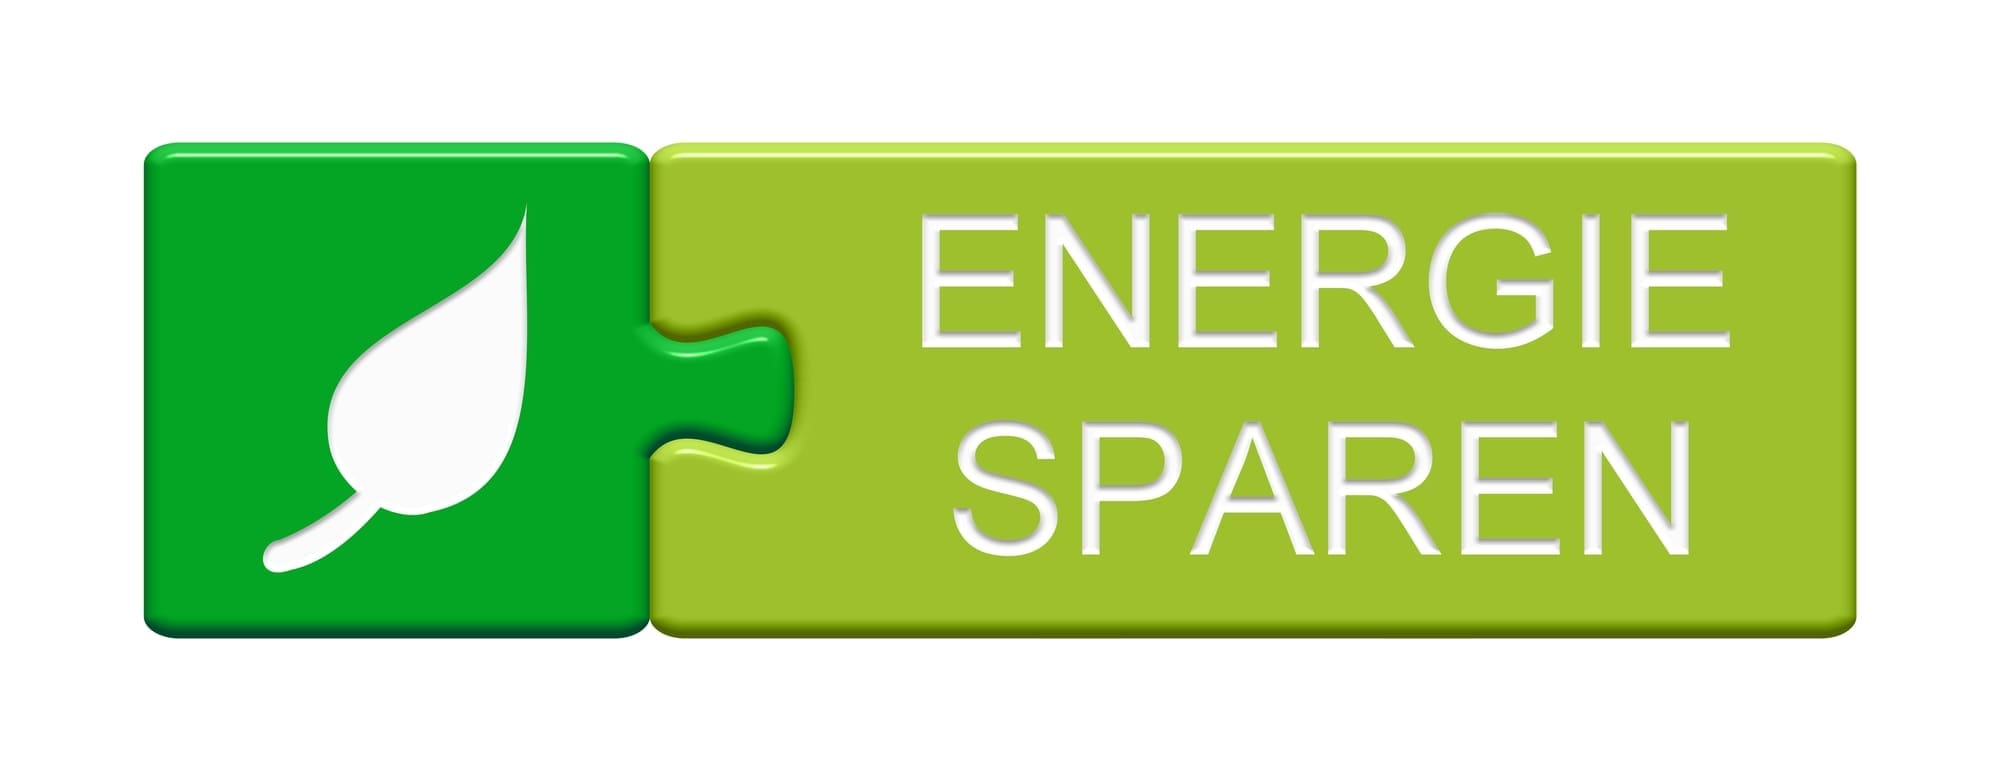 EVIGO® - Ein grünes Puzzle mit dem Wort Energie sparen darauf.